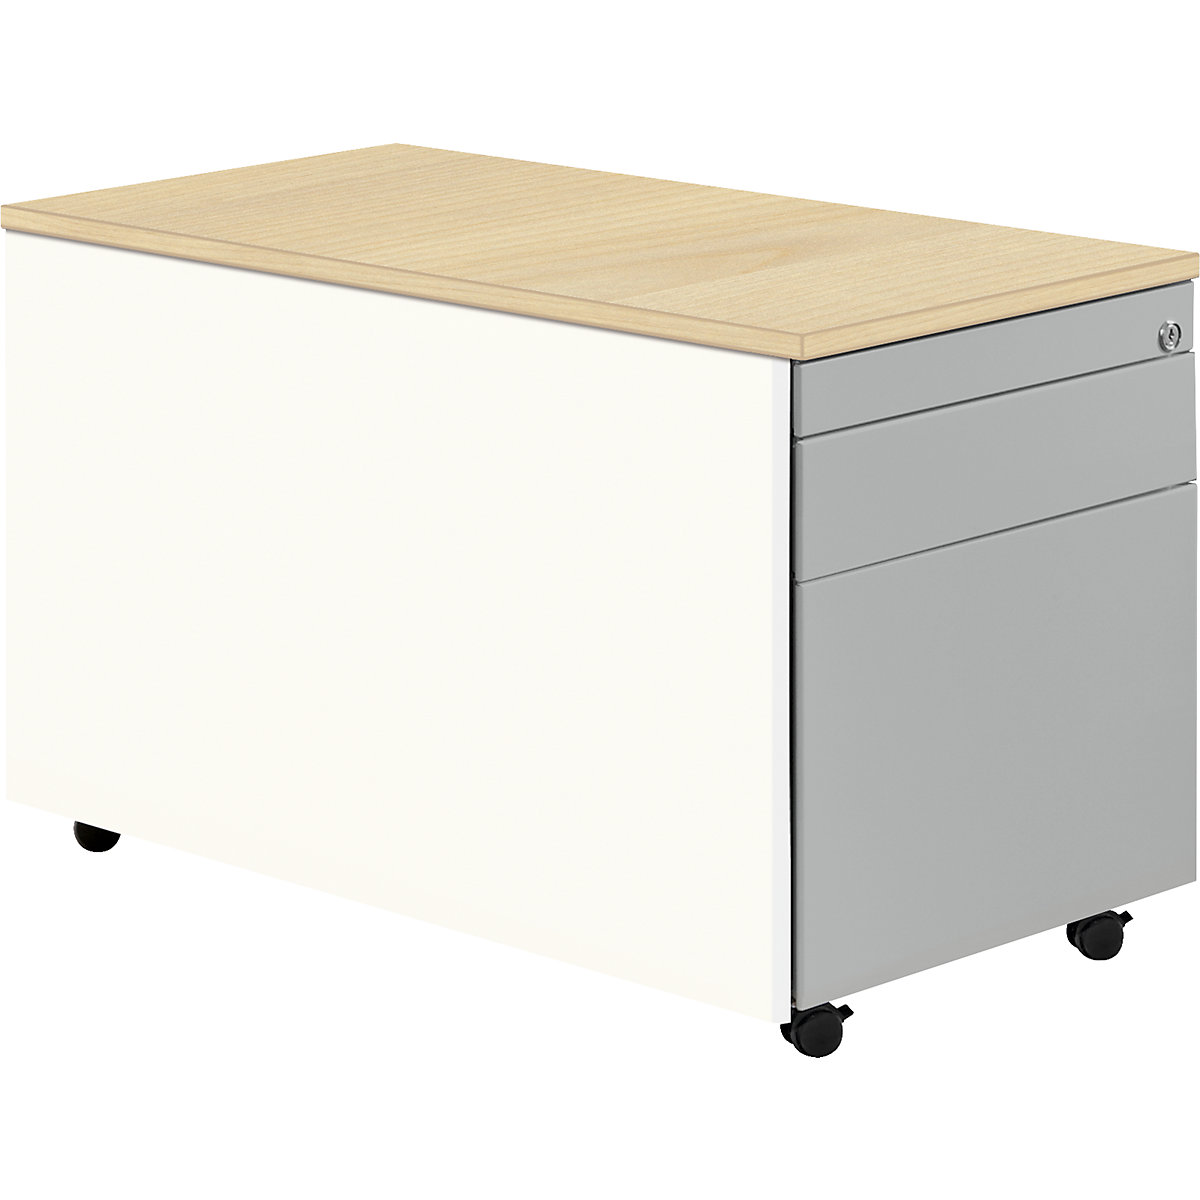 Casetieră cu sertare cu role – mauser, î. x ad. 529 x 800 mm, 1 sertar pentru materiale, 1 registratură suspendată, alb pur / alb aluminiu / arțar